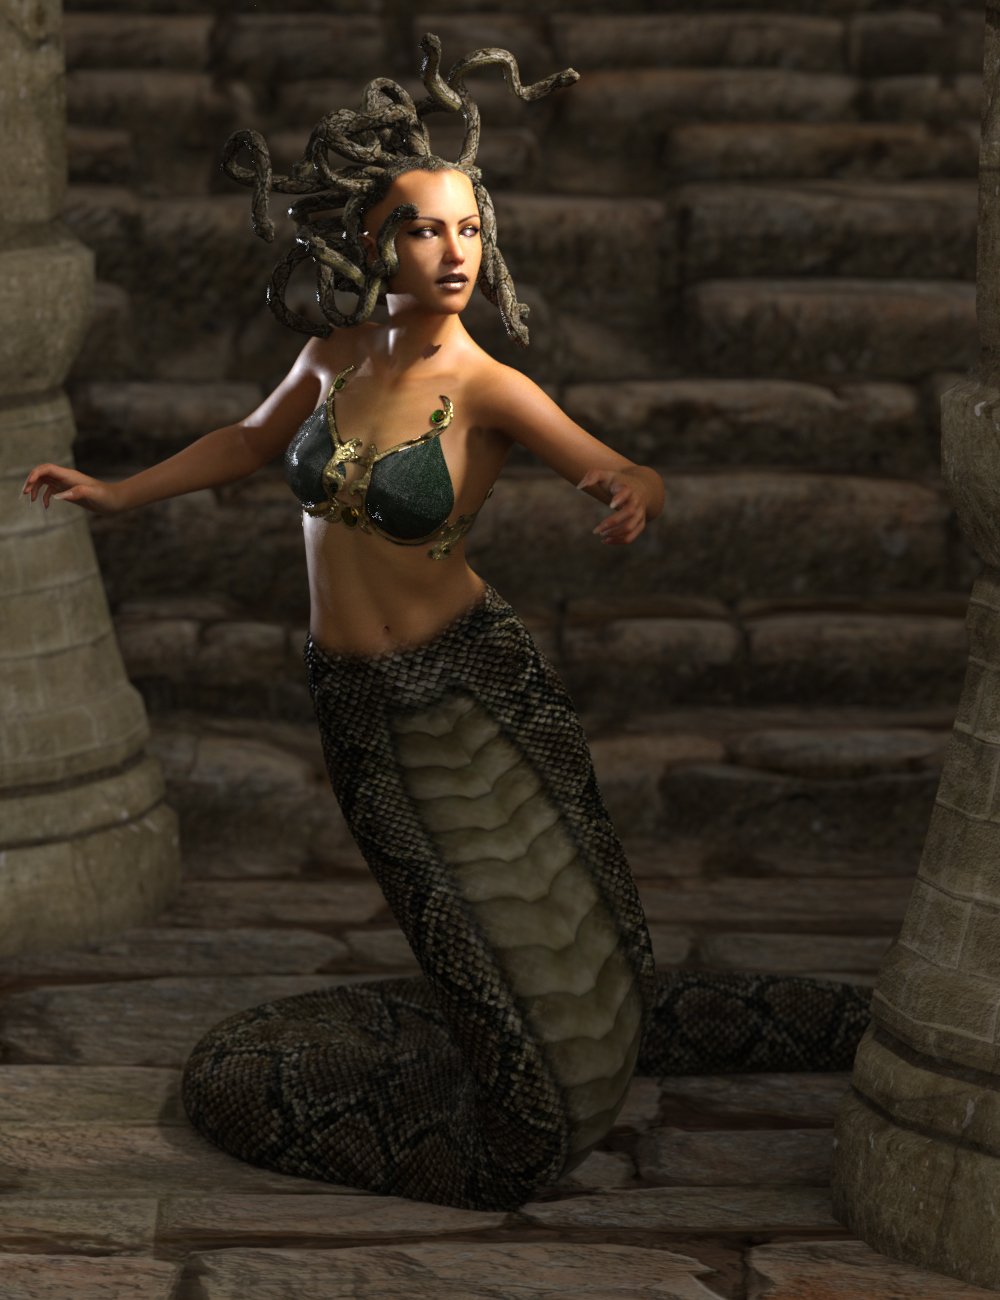 Medusa's Revenge Hierarchical Poses for Medusa by: Ensary, 3D Models by Daz 3D